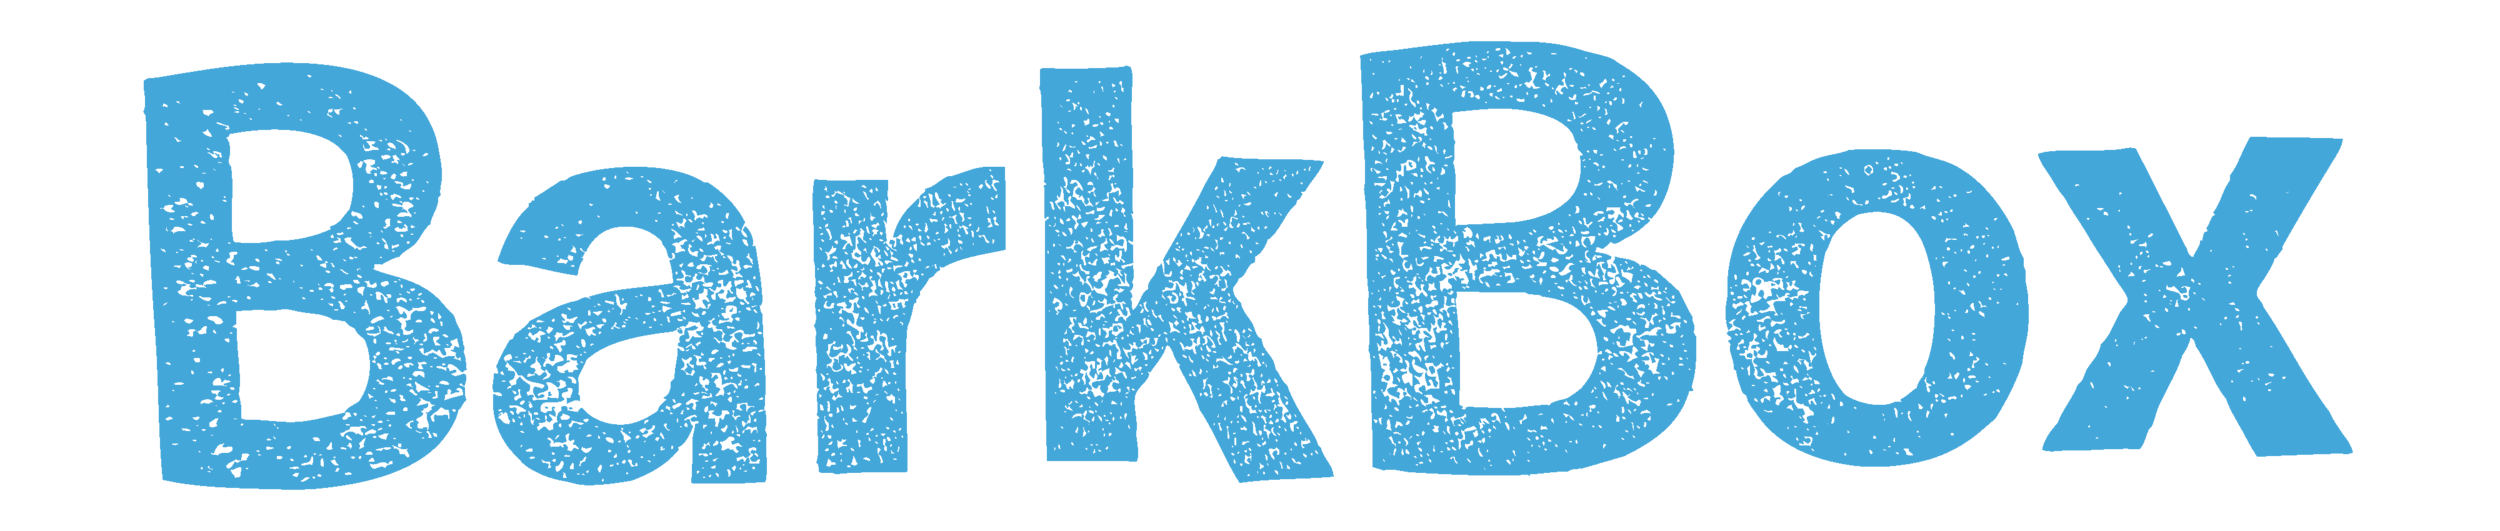 barkbox-logo-blue-default.png